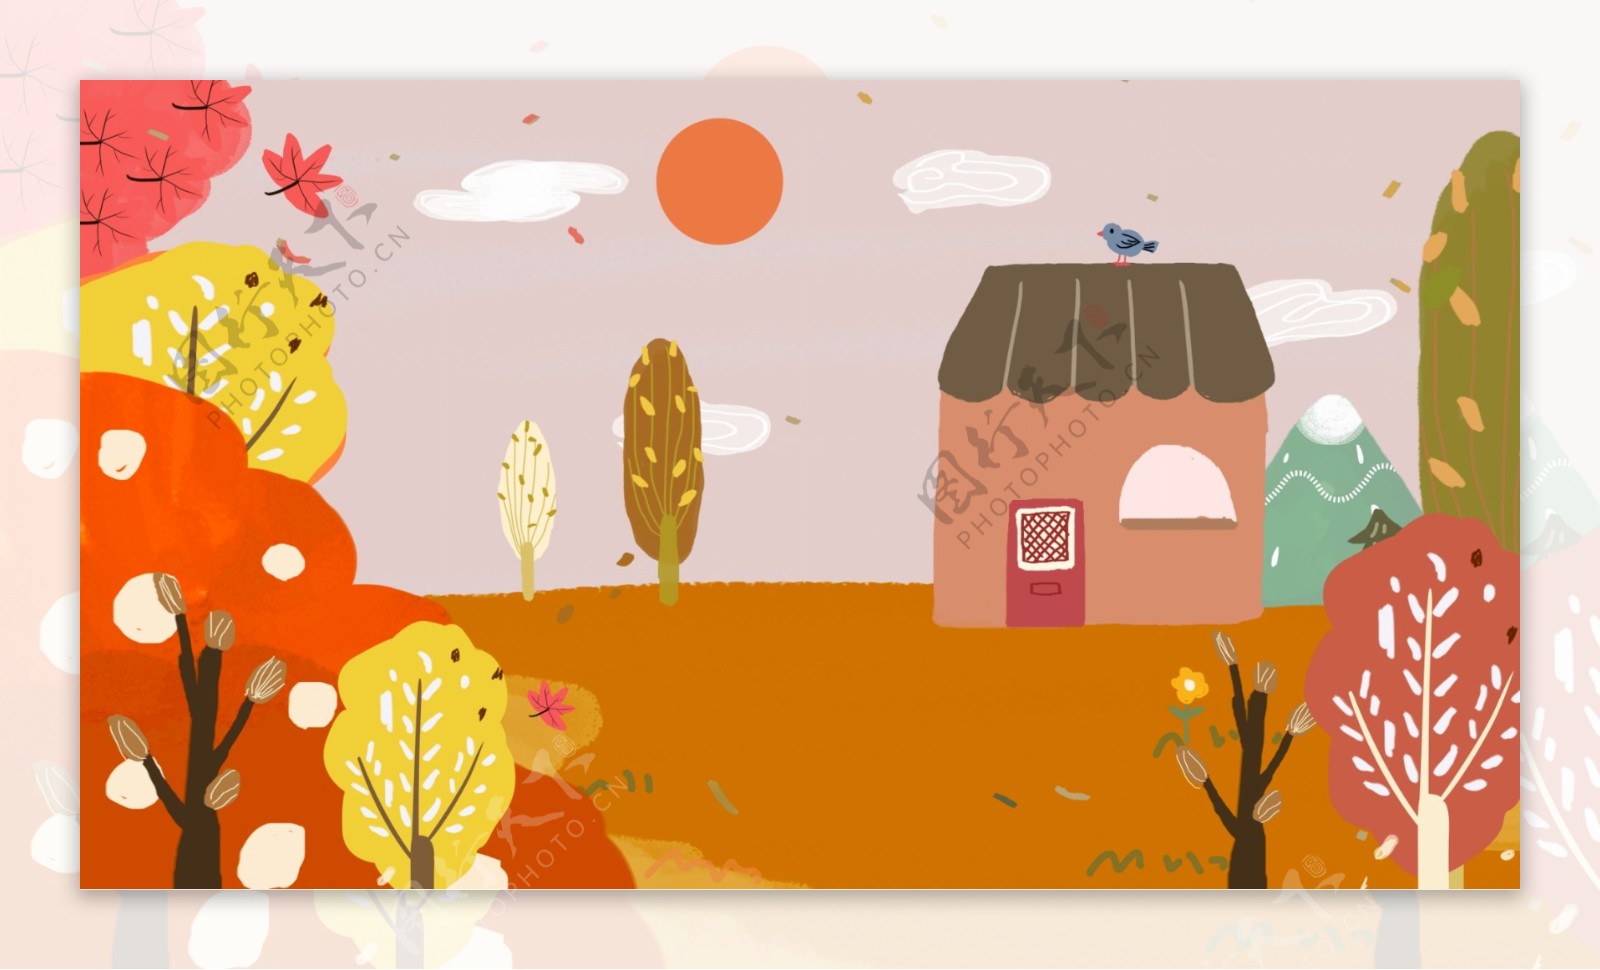 彩色卡通可爱森林小屋背景设计